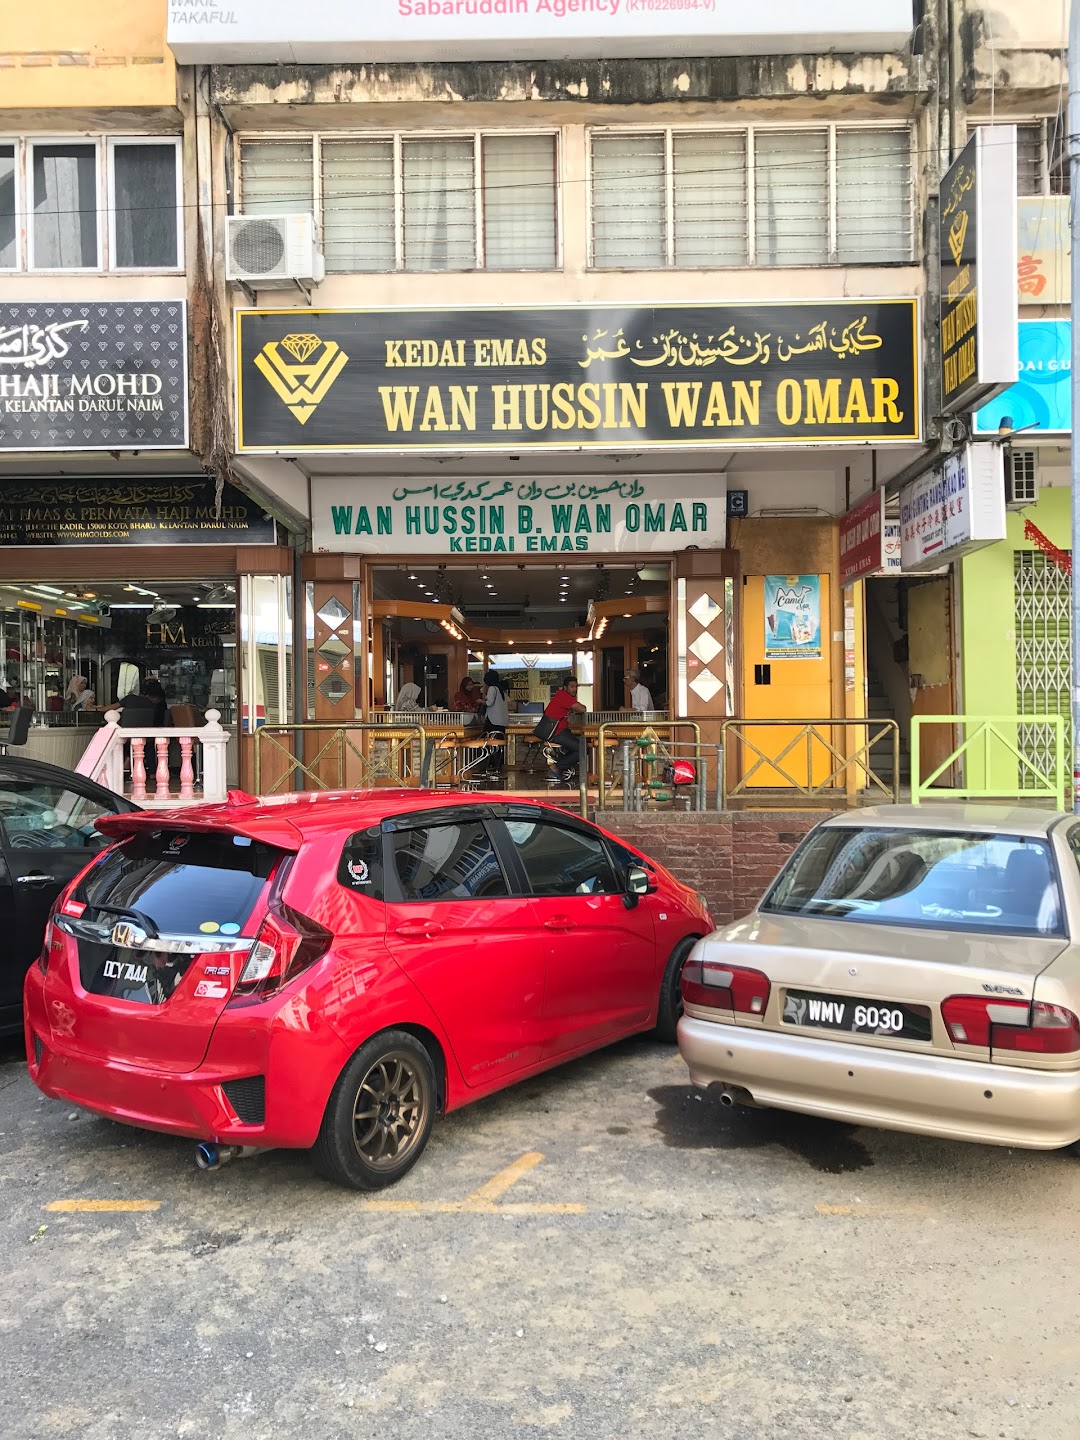 Wan Hussin Wan Omar (Kedai Mas)